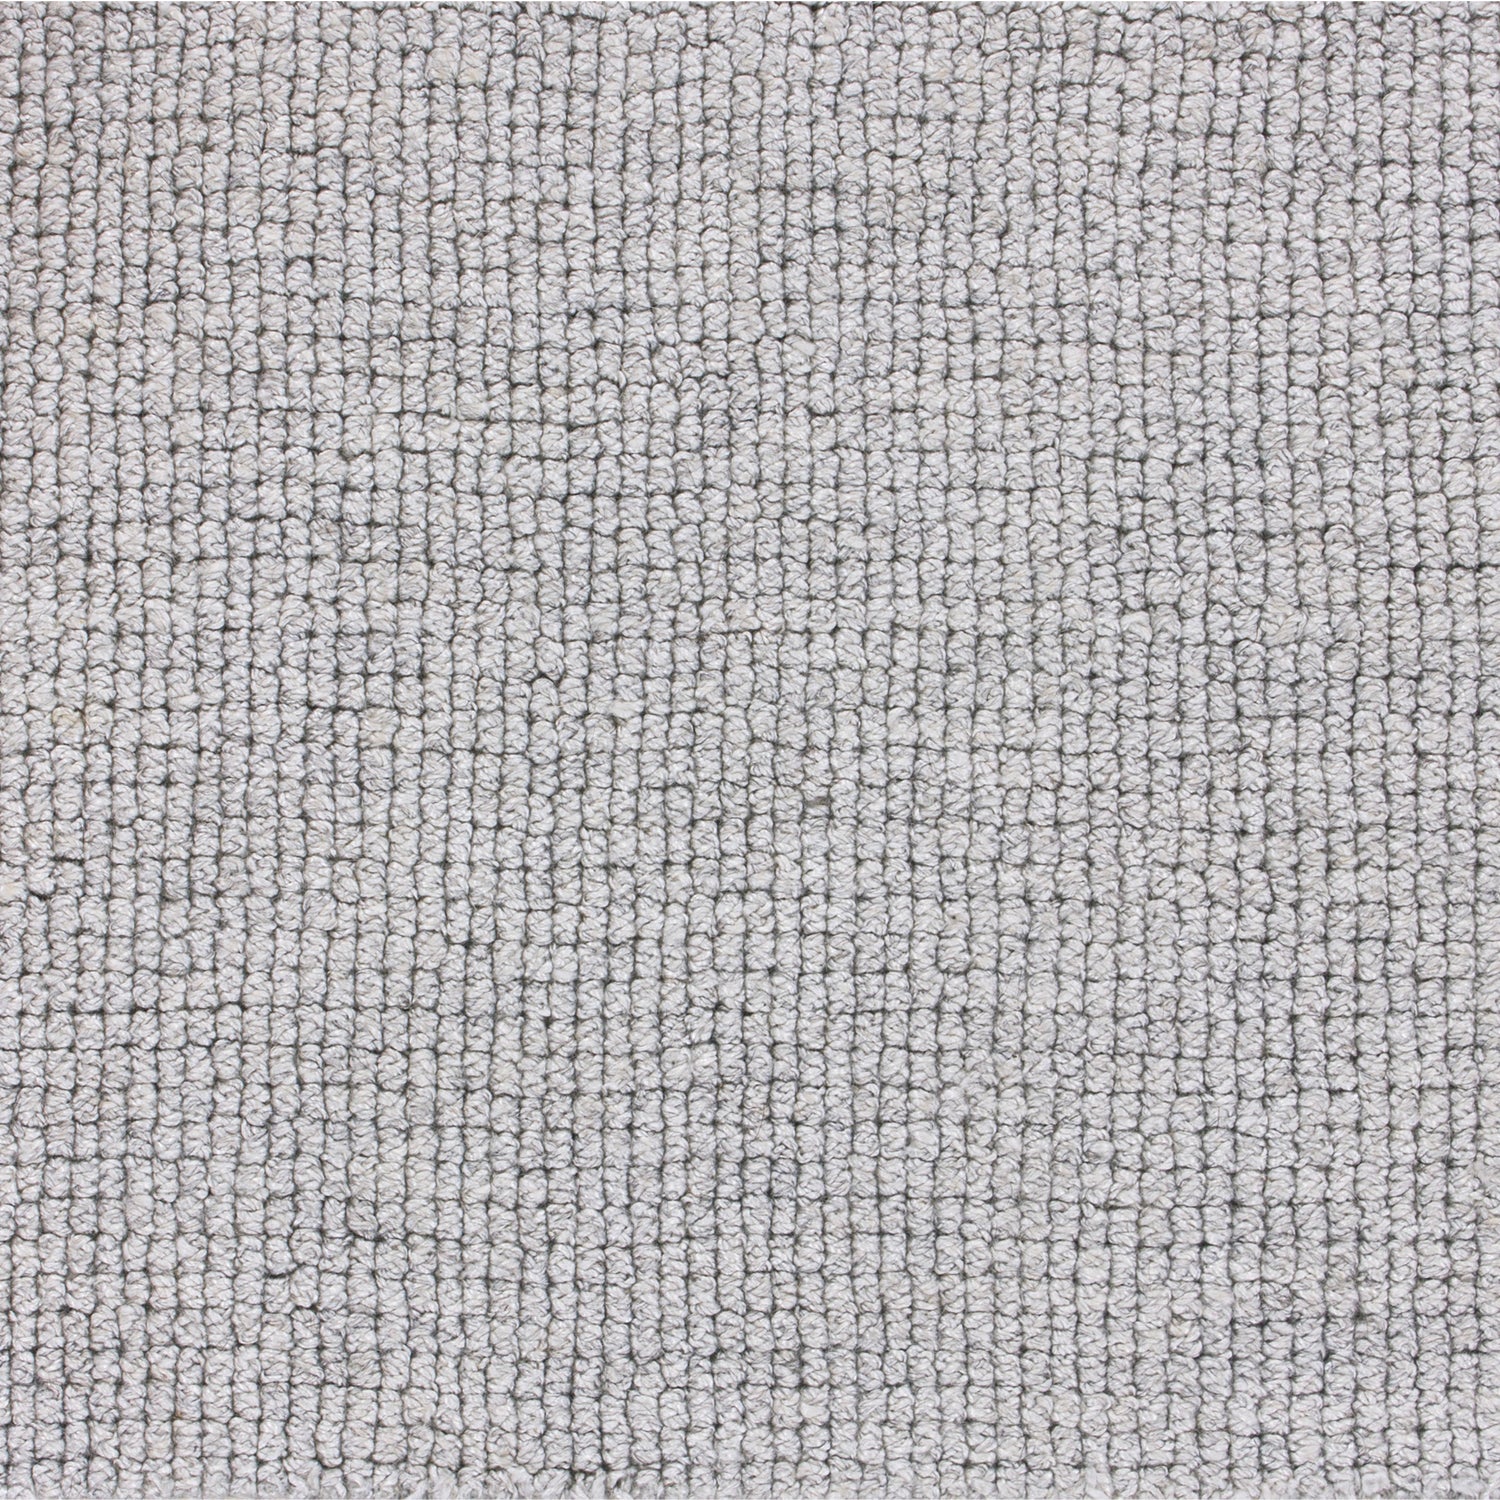 Wool-blend broadloom carpet swatch in a looped weave in silver.